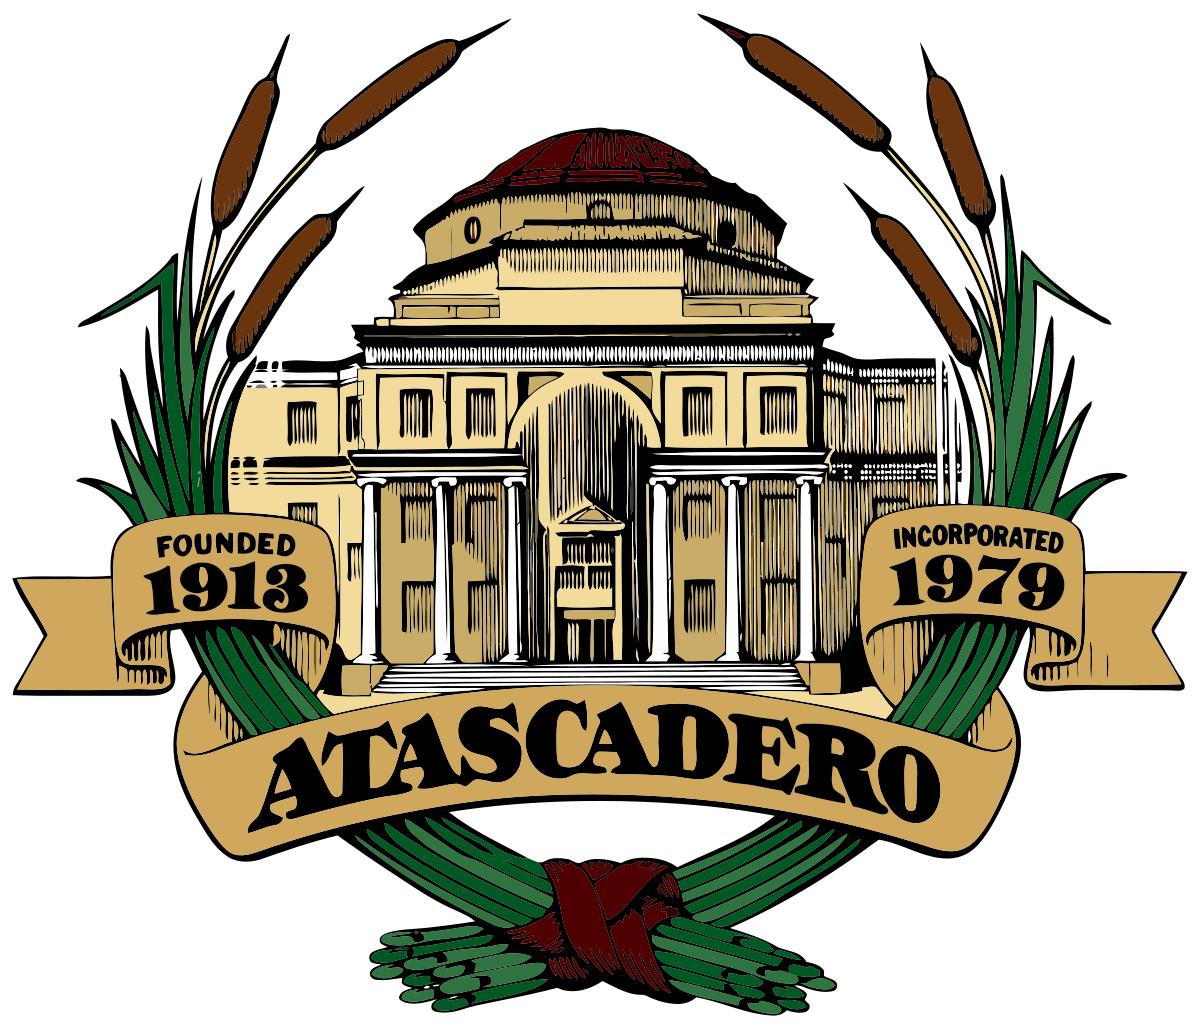 City of Atascadero logo